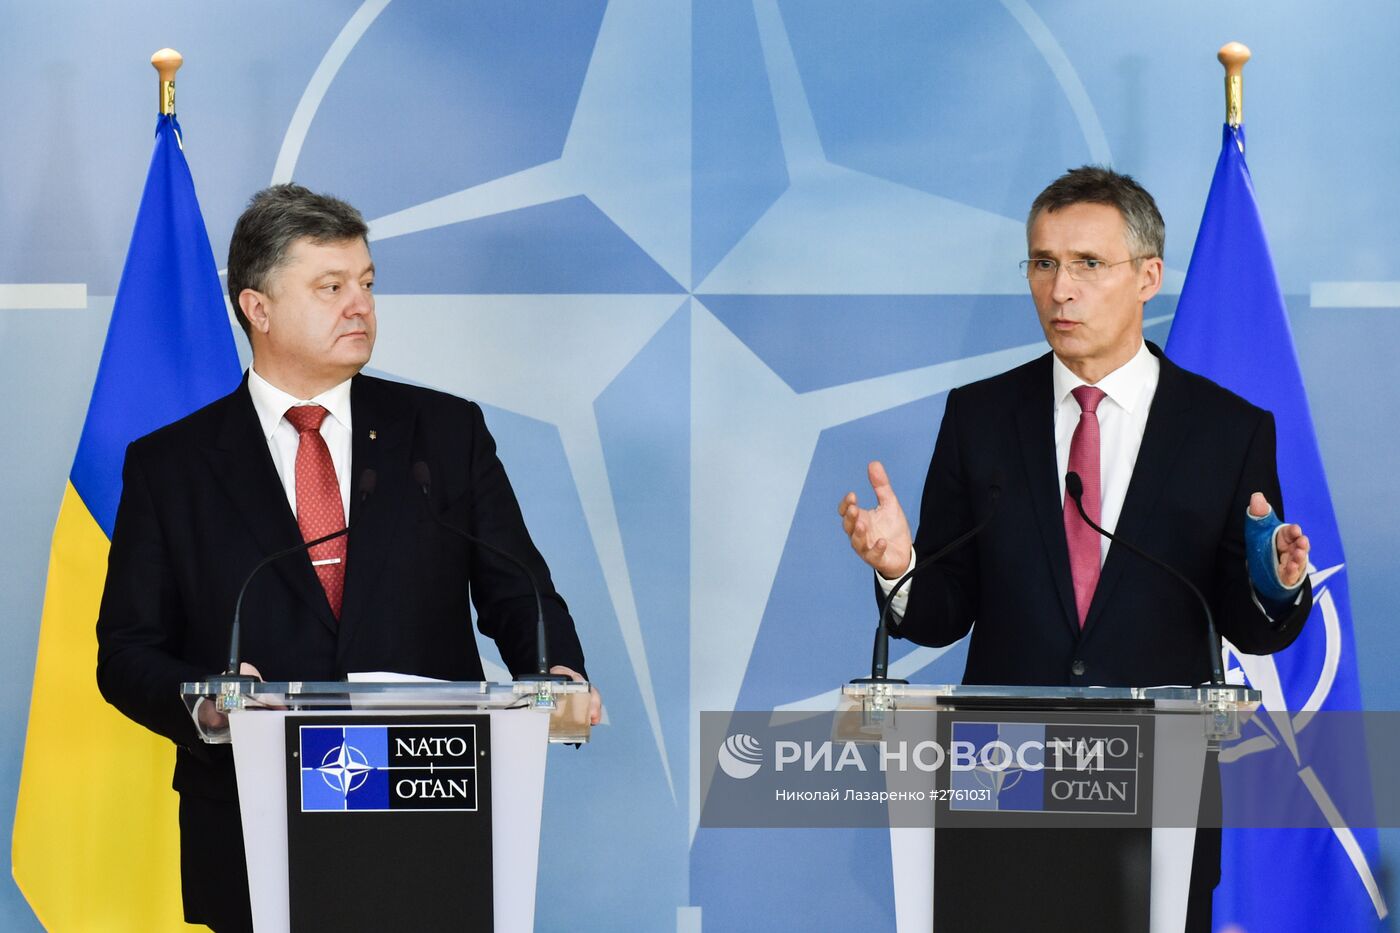 Президент Украины П.Порошенко встретился с руководством НАТО в Брюссе